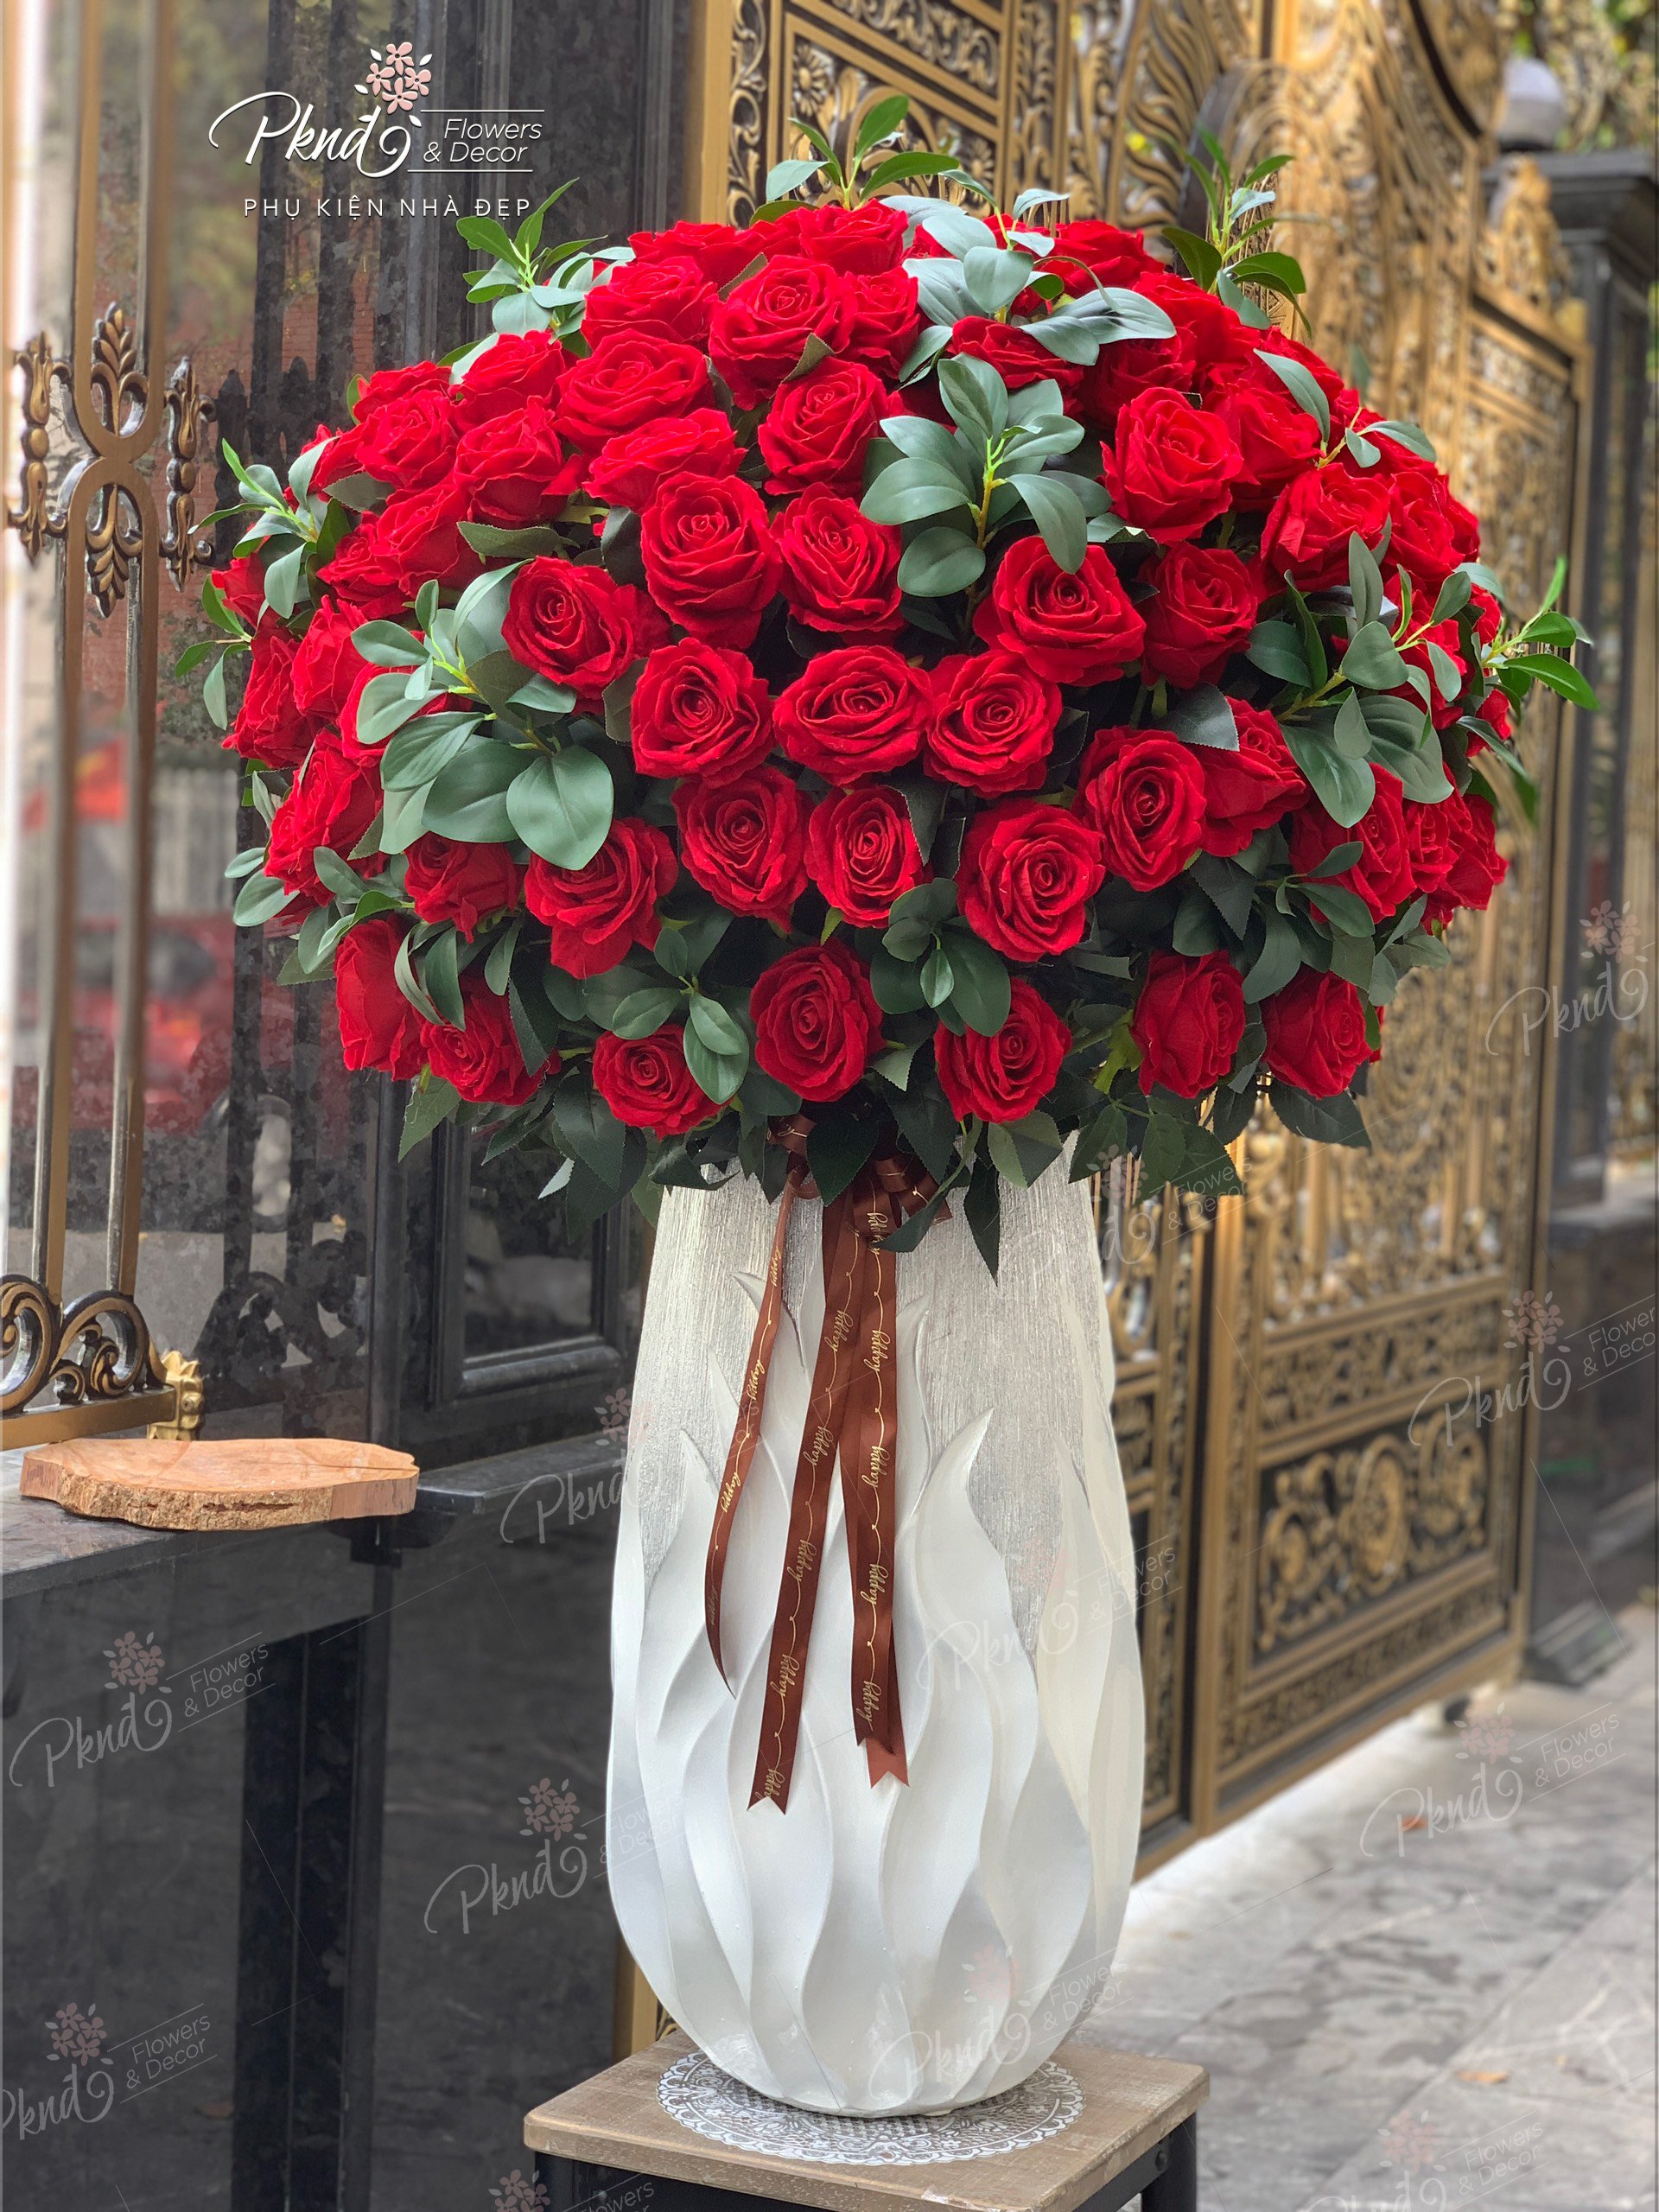 Bình hoa hồng giả chất liệu lụa cao cấp màu đỏ, siêu to kích thước ...